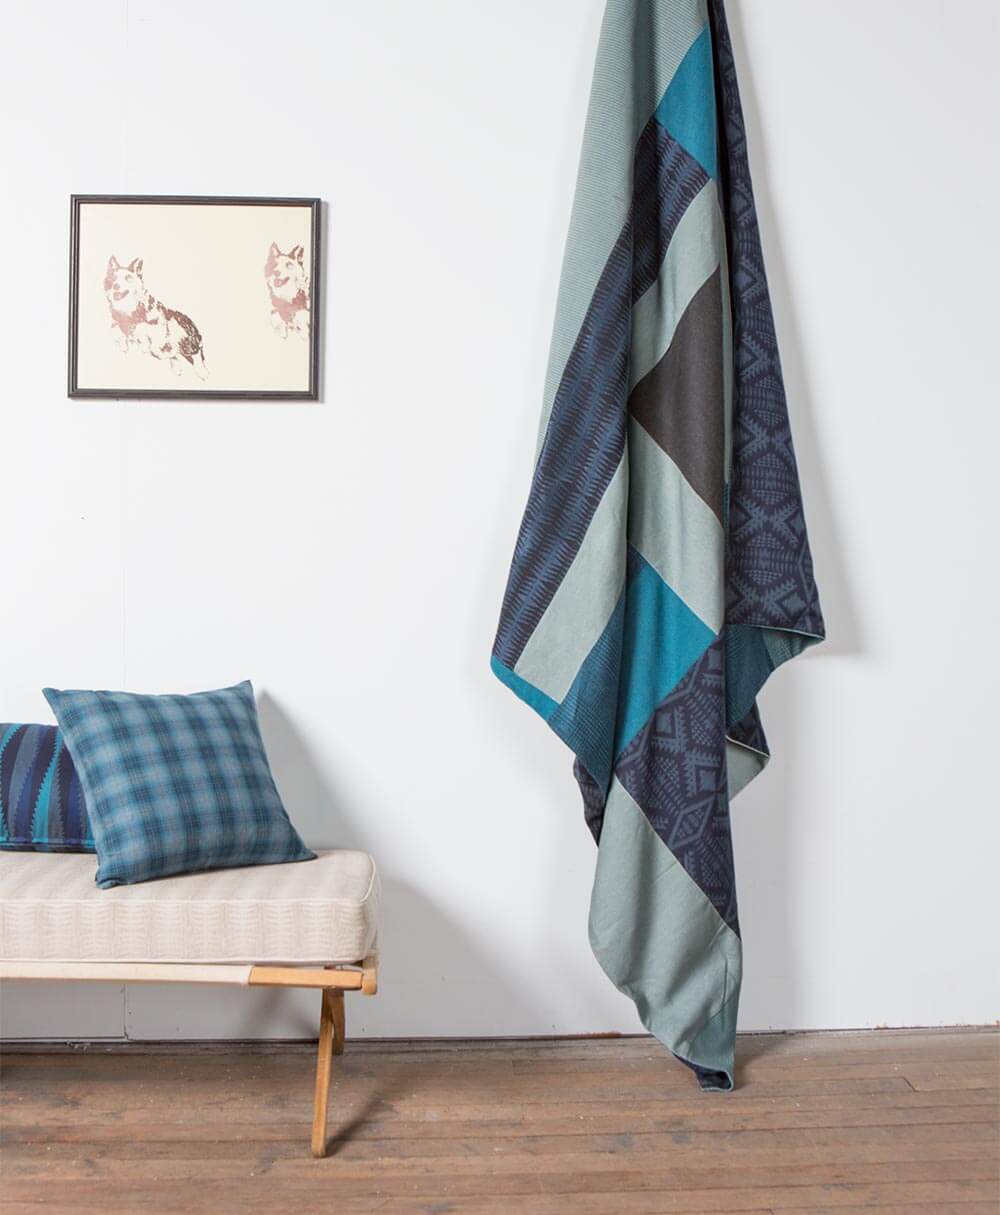 Acolchado confeccionado con trozos de telas para tapicería Pendleton por Sunbrella, que cuelga del techo junto a almohadas con patrones azules.